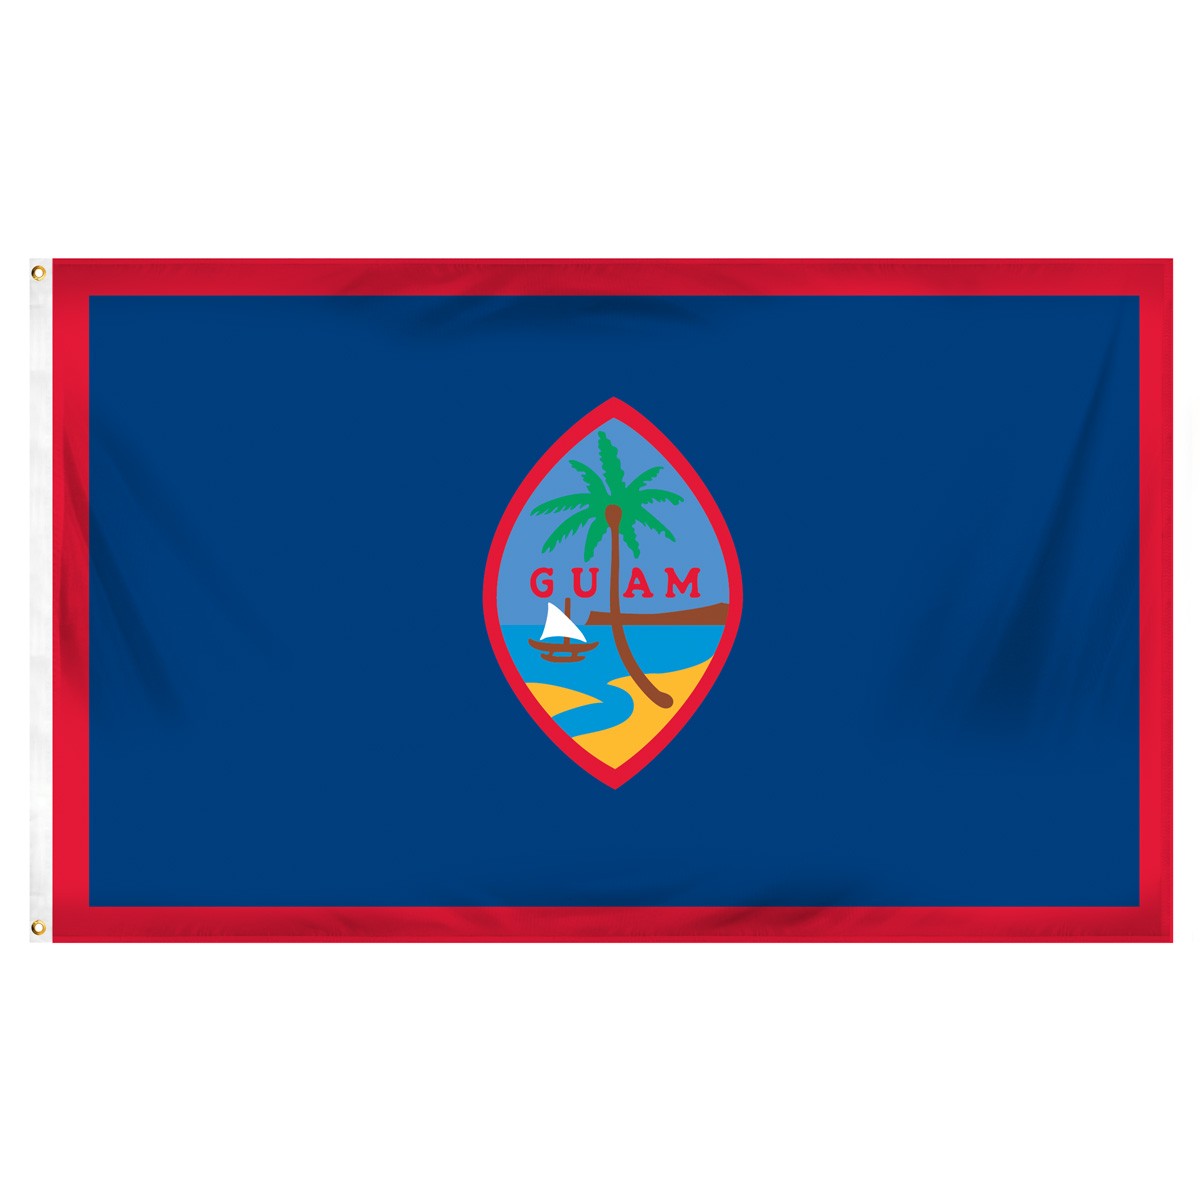 Guam Car Convoy Flags